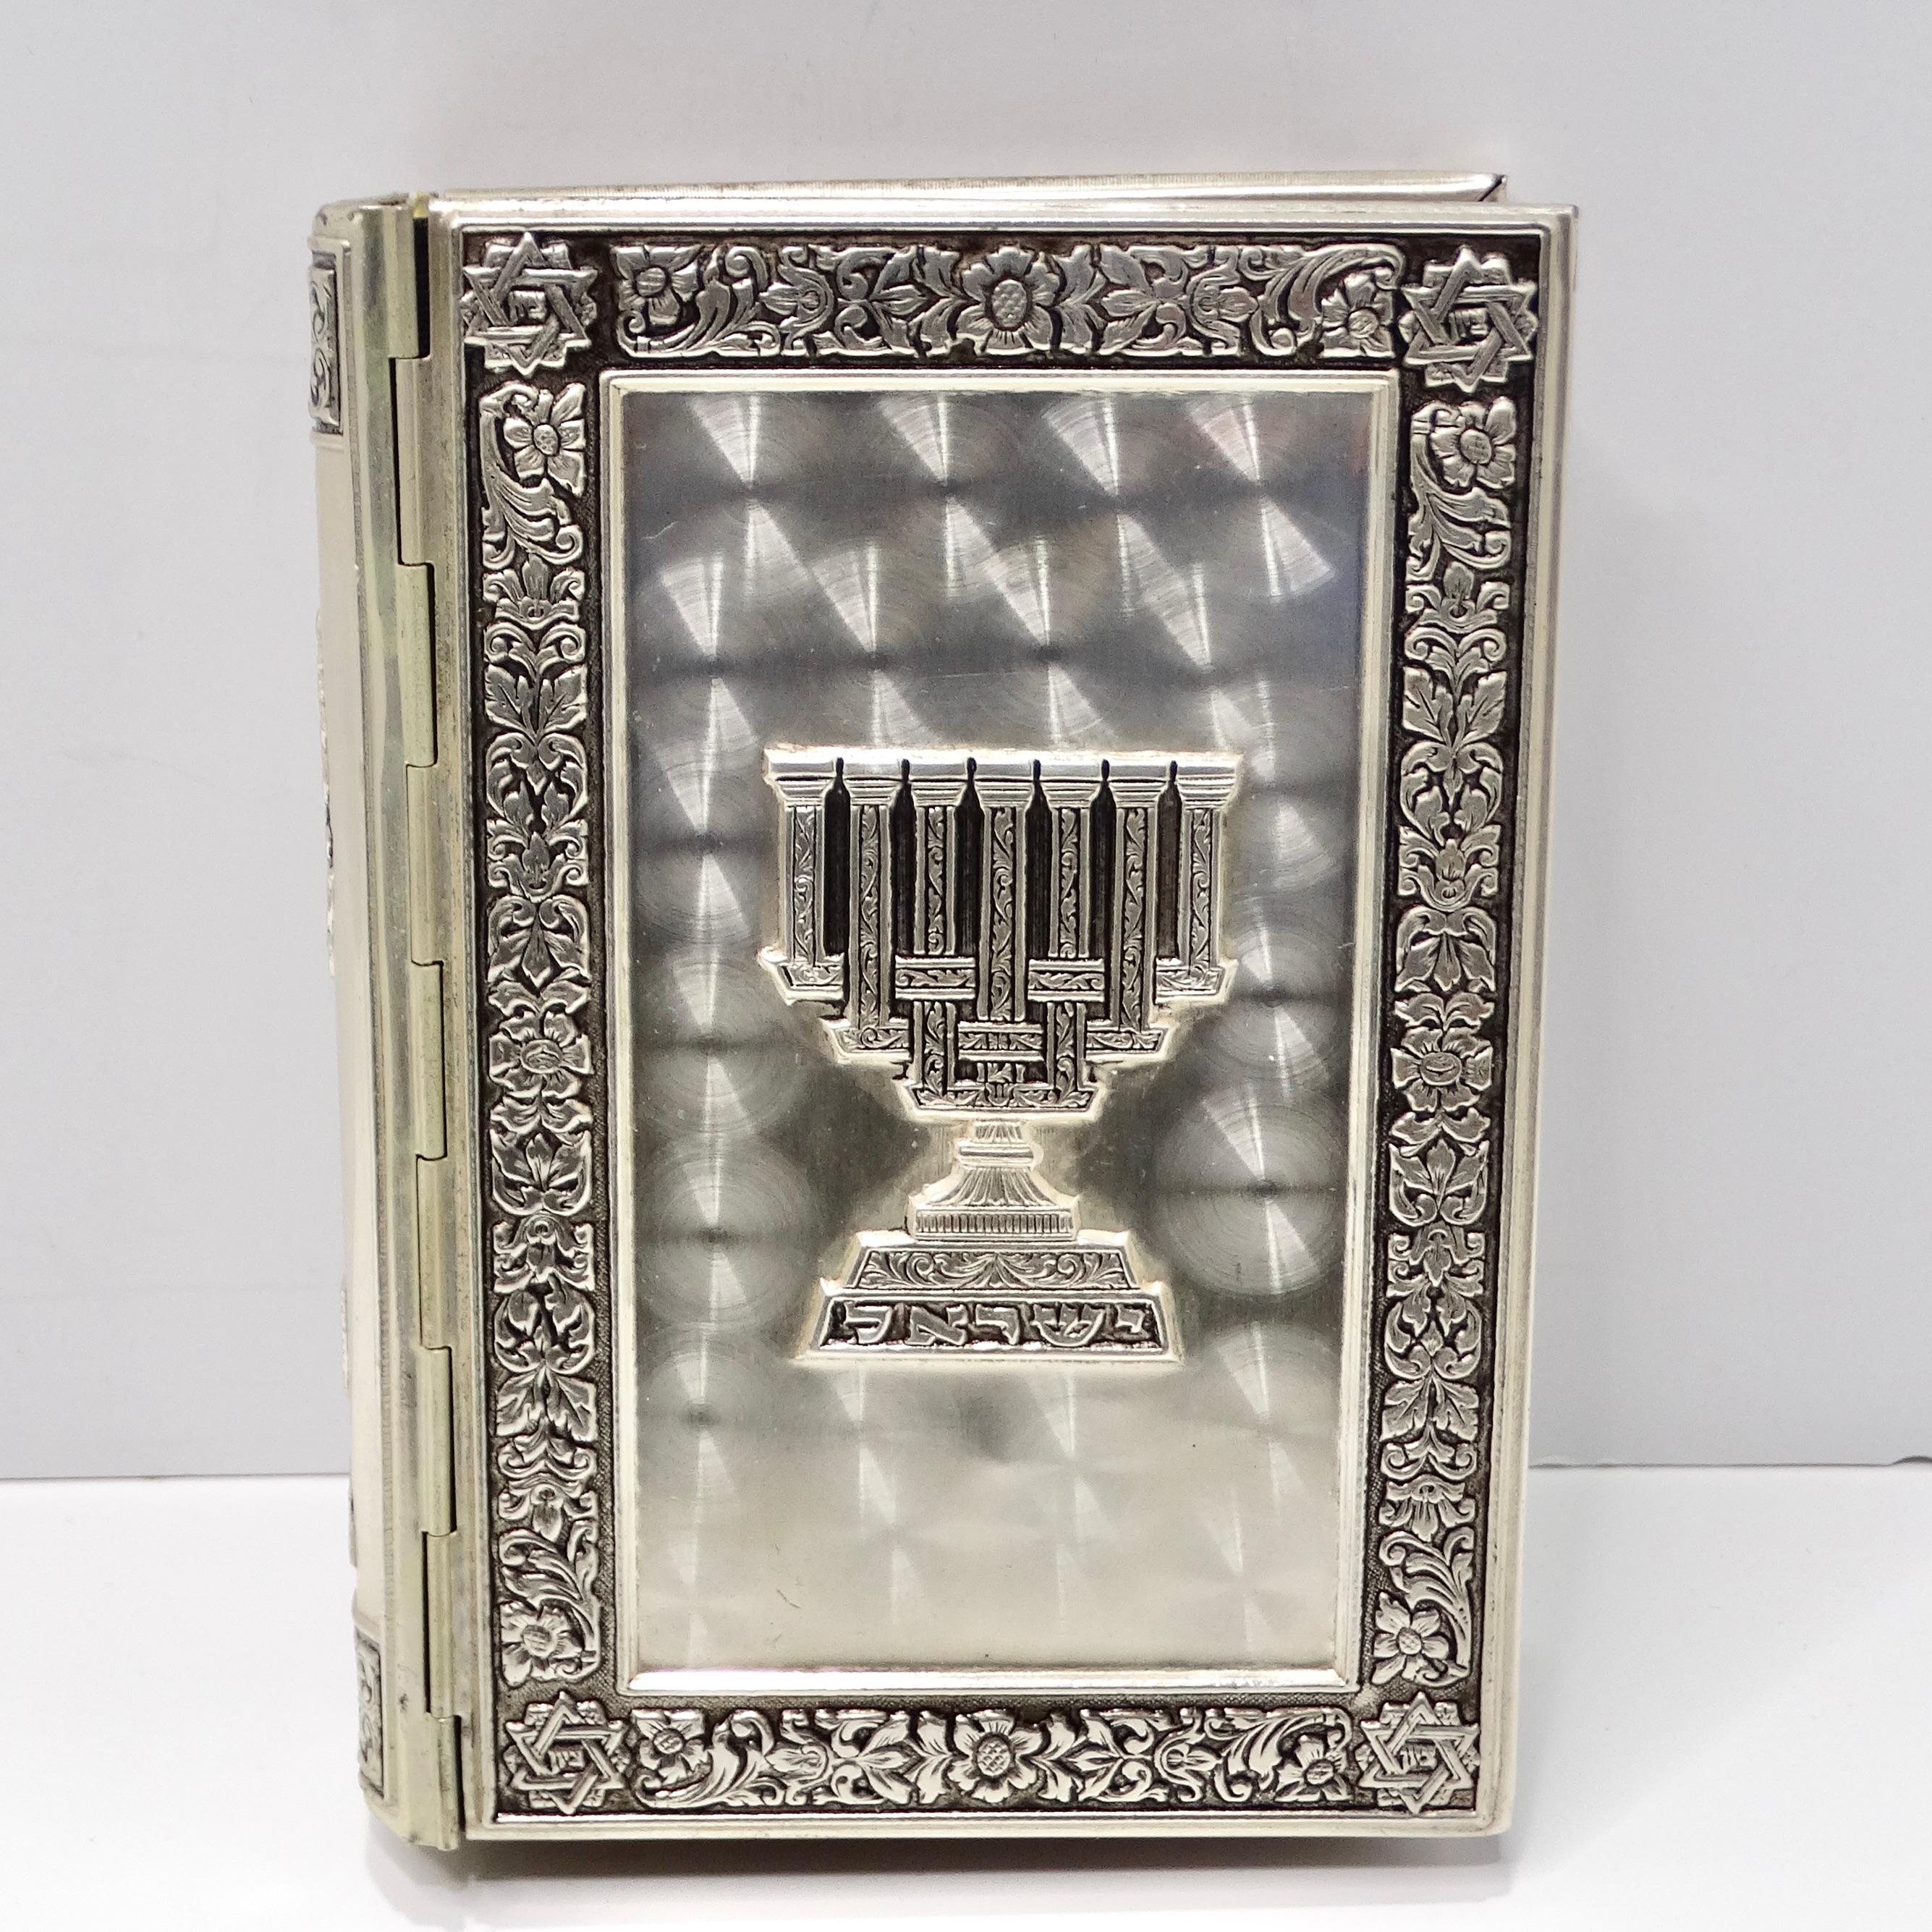 Die exquisite, mit Edelsteinen besetzte jüdische Tora von 1964 ist ein atemberaubendes Zeugnis für Handwerkskunst und Hingabe. Dieses versilberte hebräische Gebetbuch ist mit aufwendigen Gravuren verziert, die einen reichen Wandteppich jüdischer